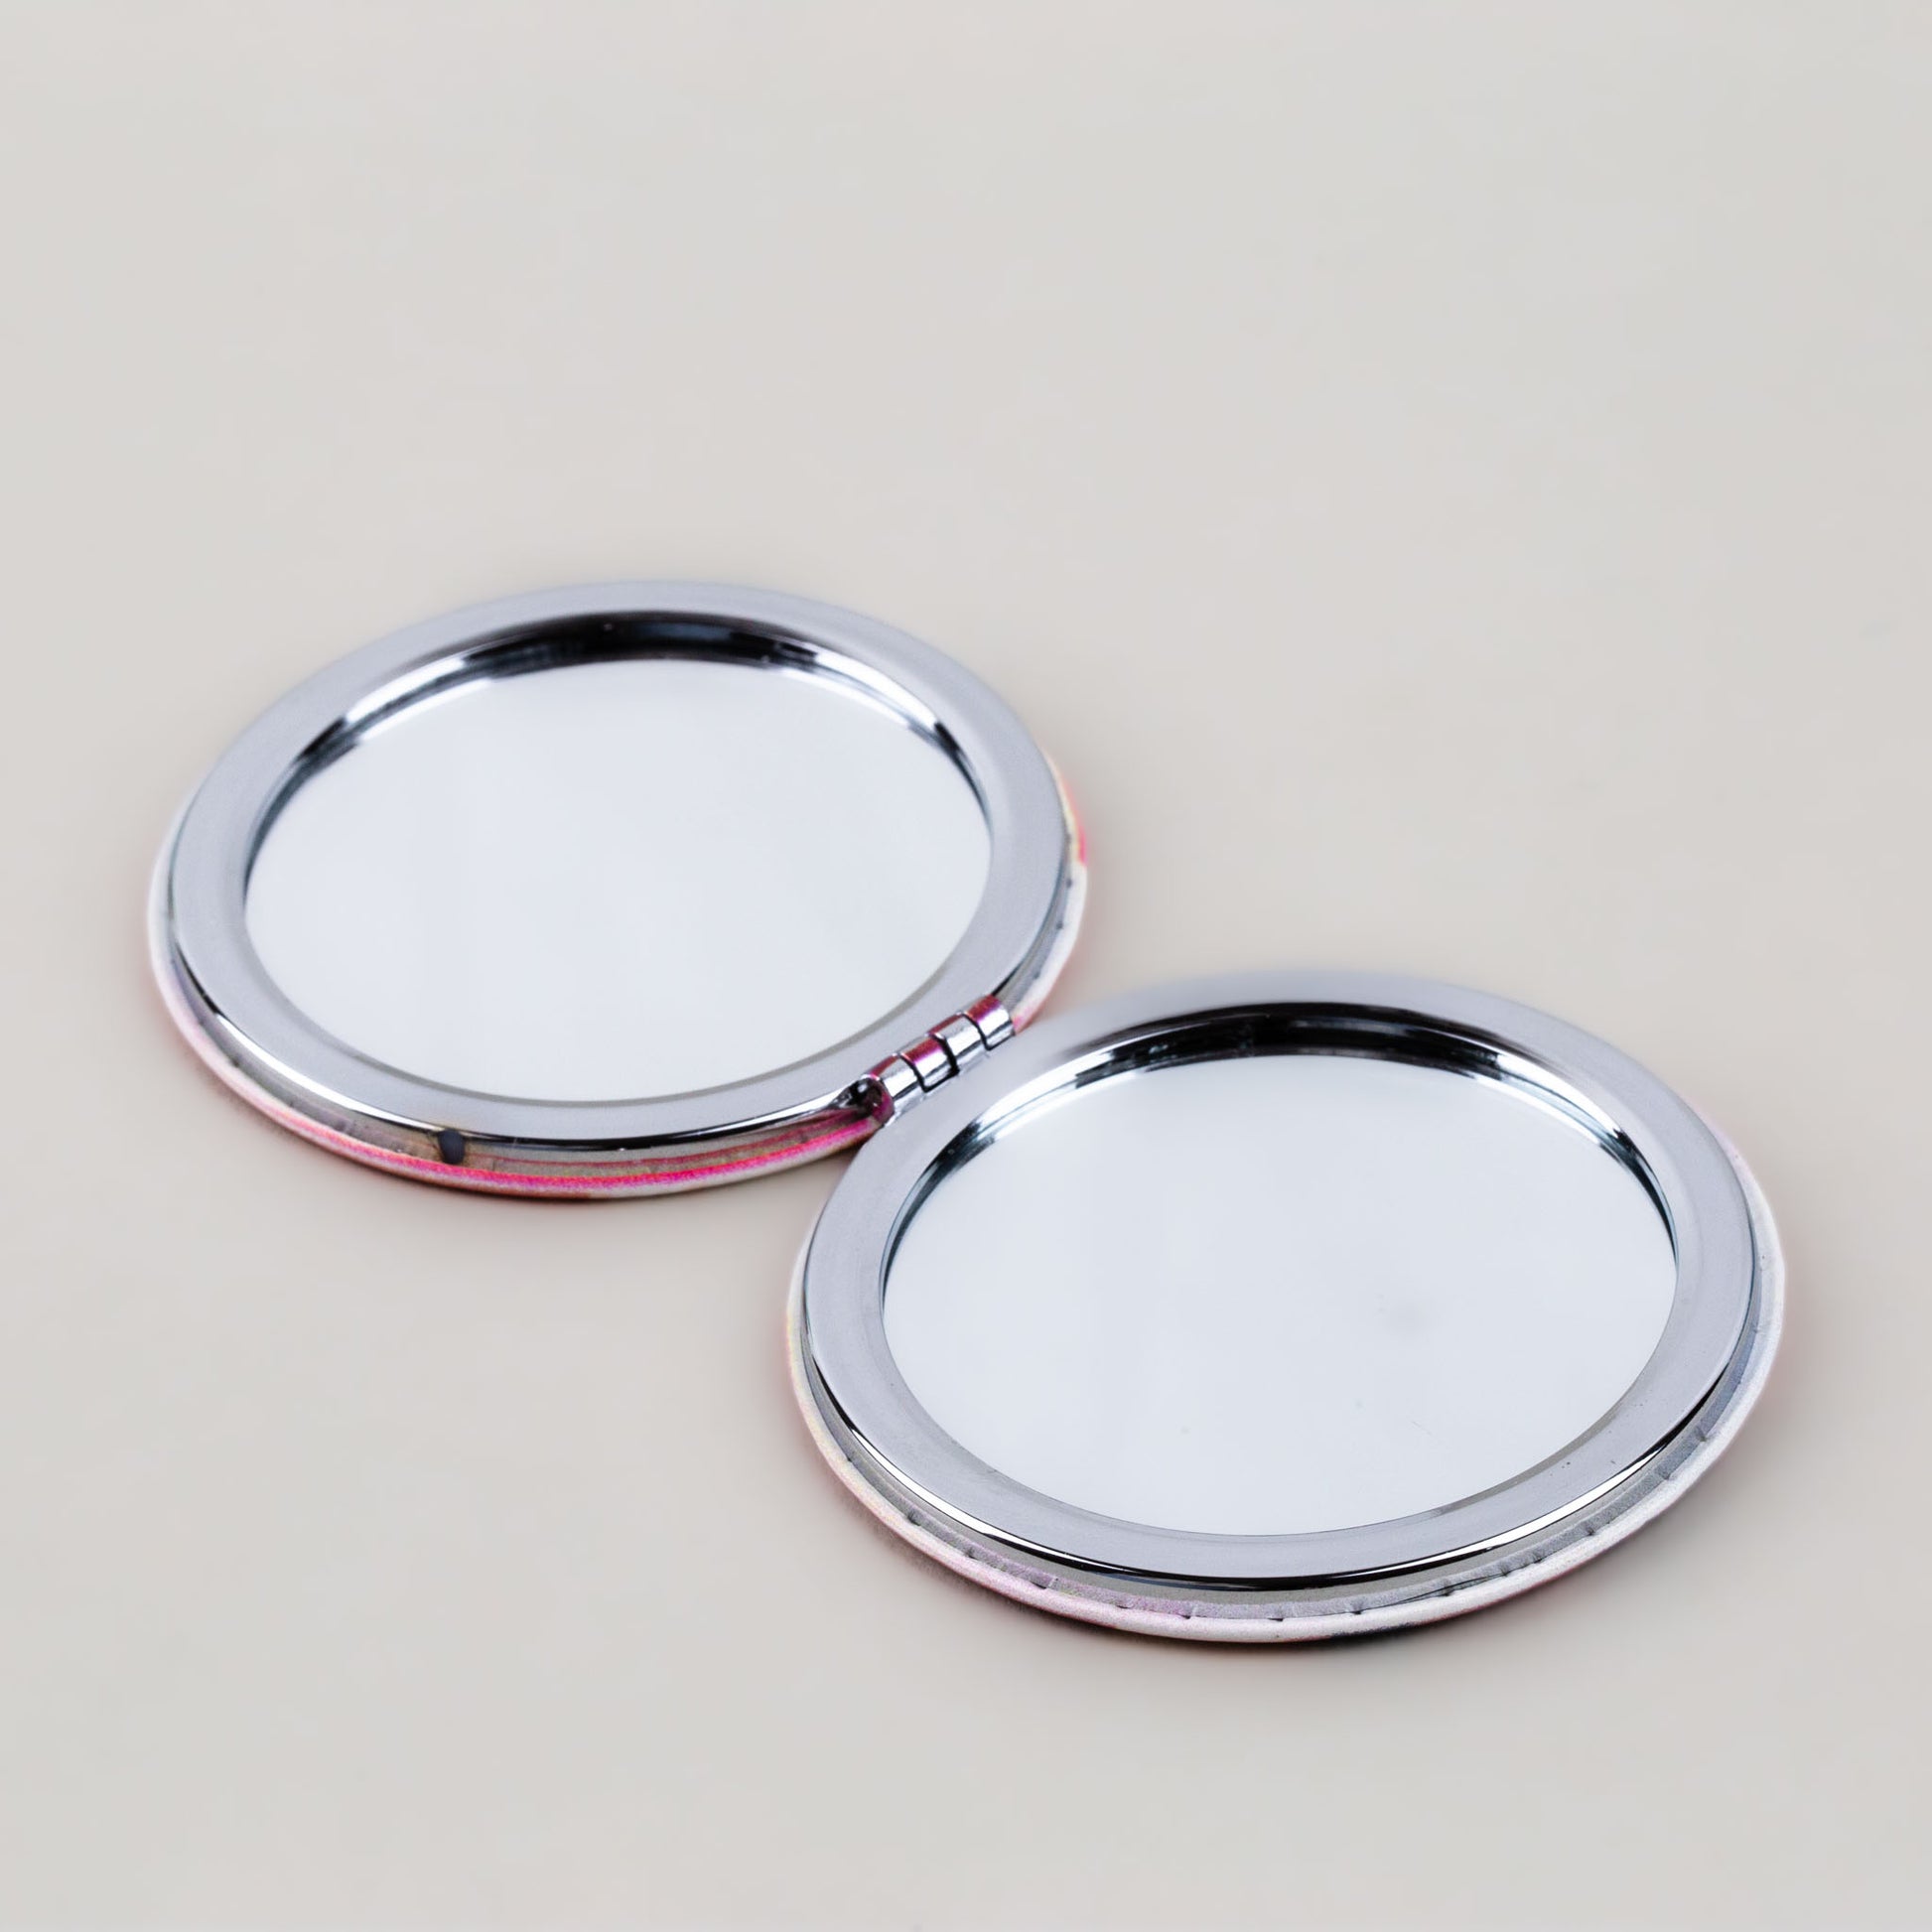 Oglindă de poșetă, formă rotundă cu 2 părți, model seniorita - Chic